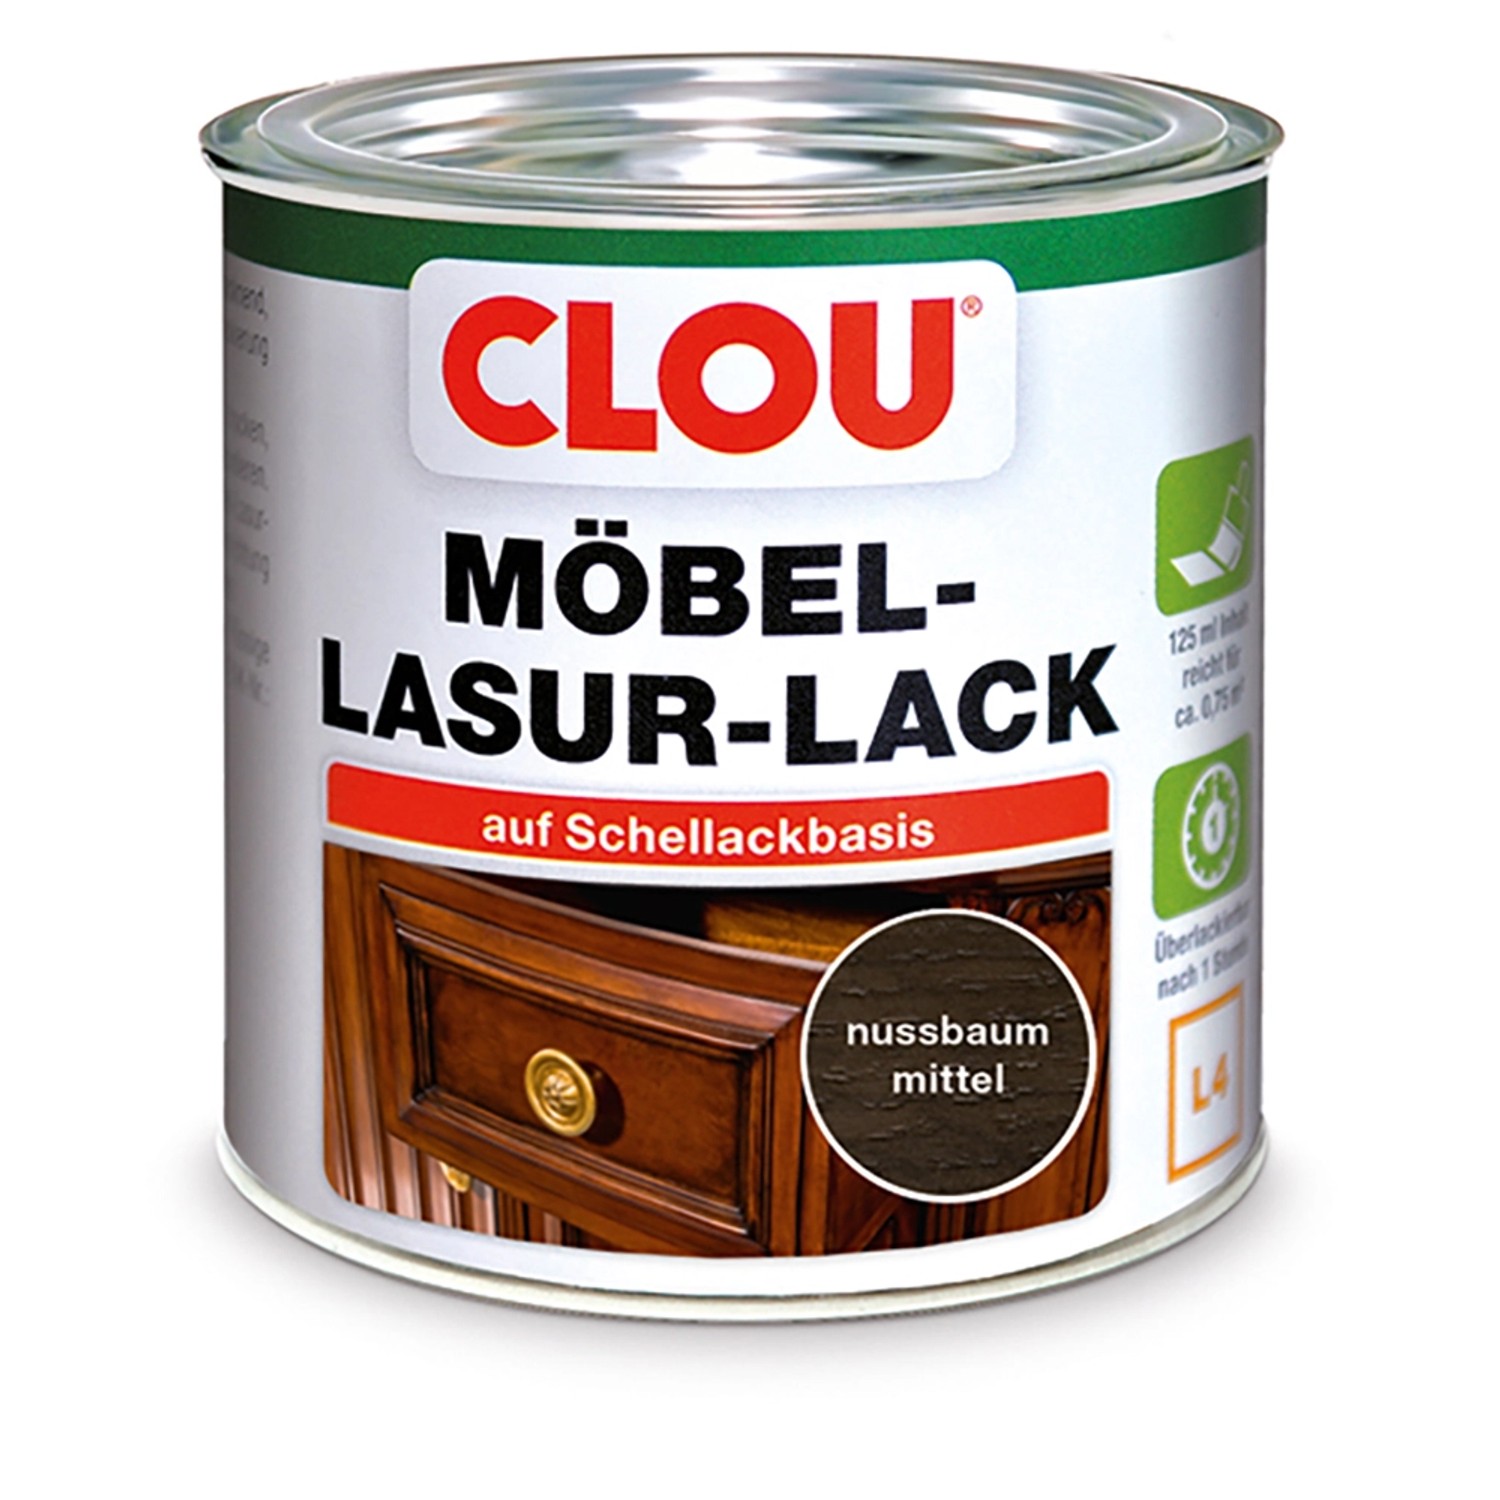 Clou Möbel-Lasur-Lack Nussbaum Mittel 125 ml von CLOU